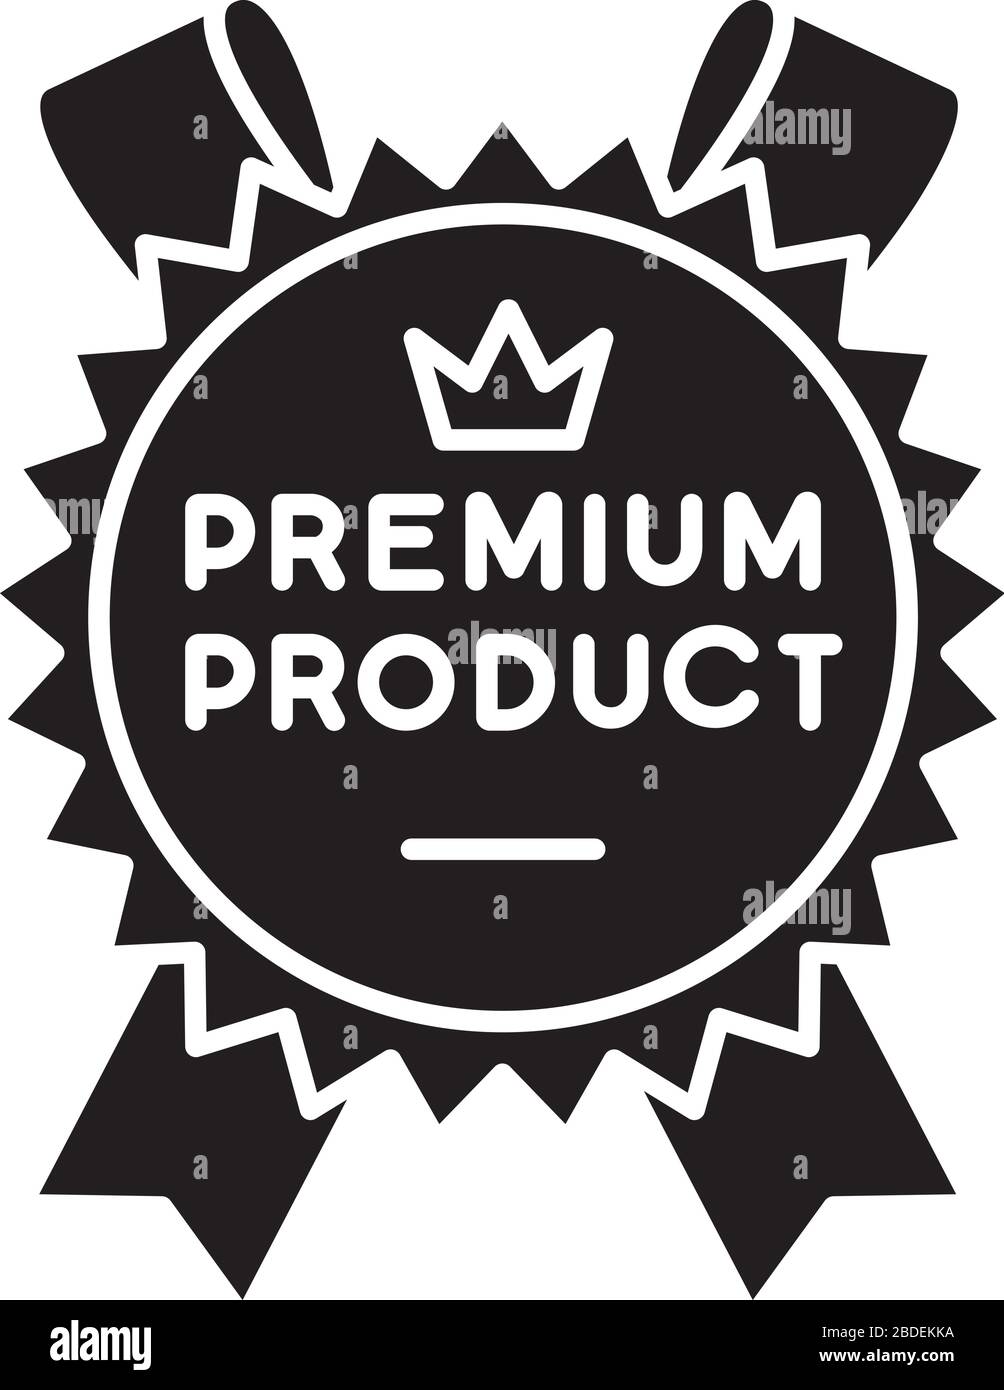 Icona glyph nero prodotto Premium. Prodotto e servizio di prima classe, simbolo di brand equity silhouette su spazio bianco. Classe reale, prodotti migliori e di qualità superiore Illustrazione Vettoriale